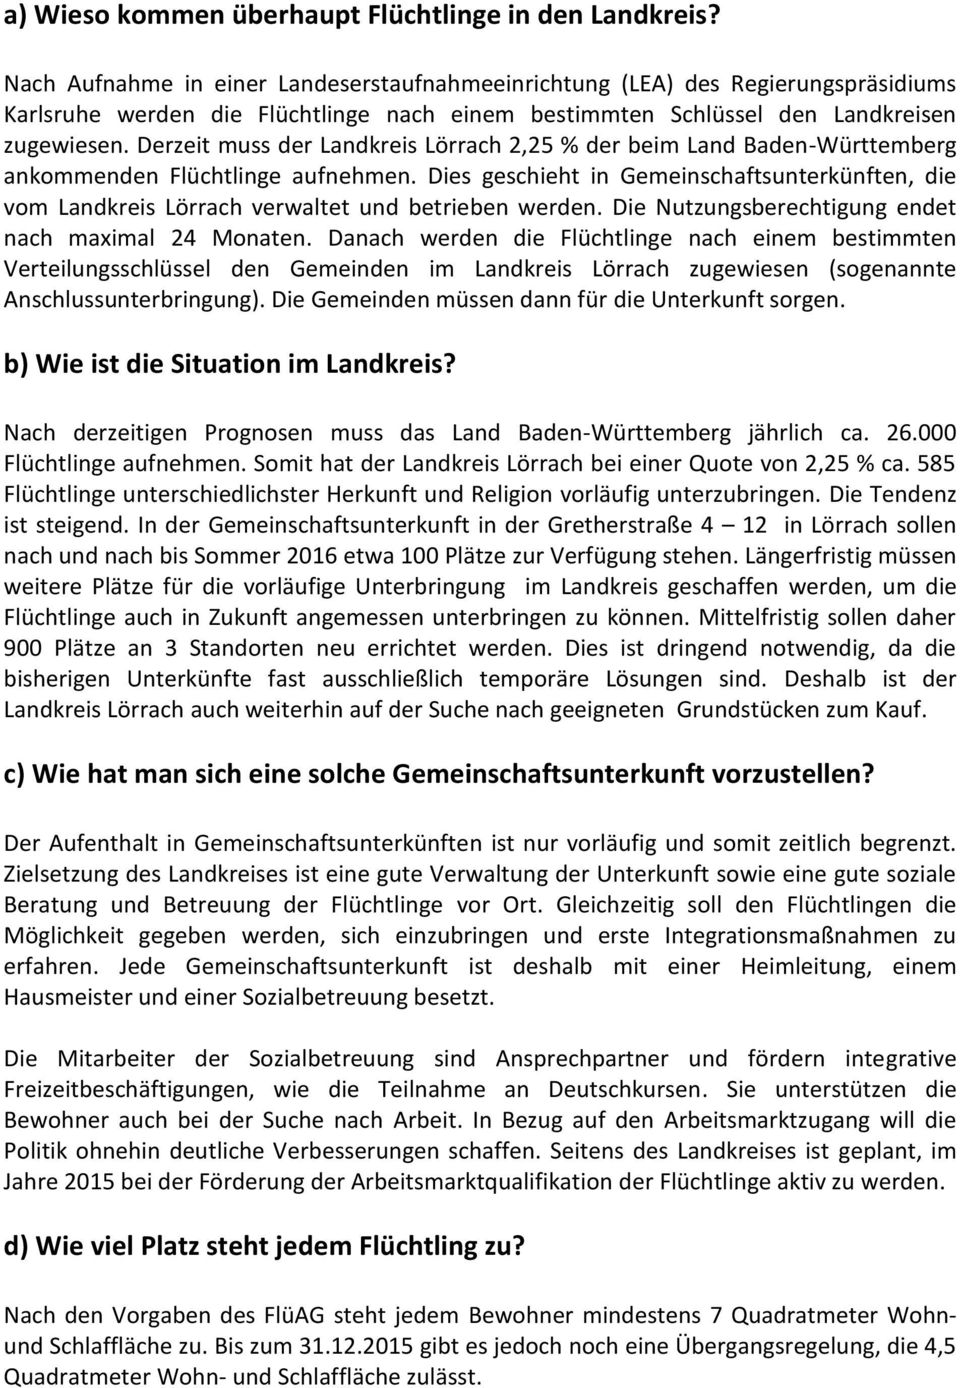 Derzeit muss der Landkreis Lörrach 2,25 % der beim Land Baden-Württemberg ankommenden Flüchtlinge aufnehmen.